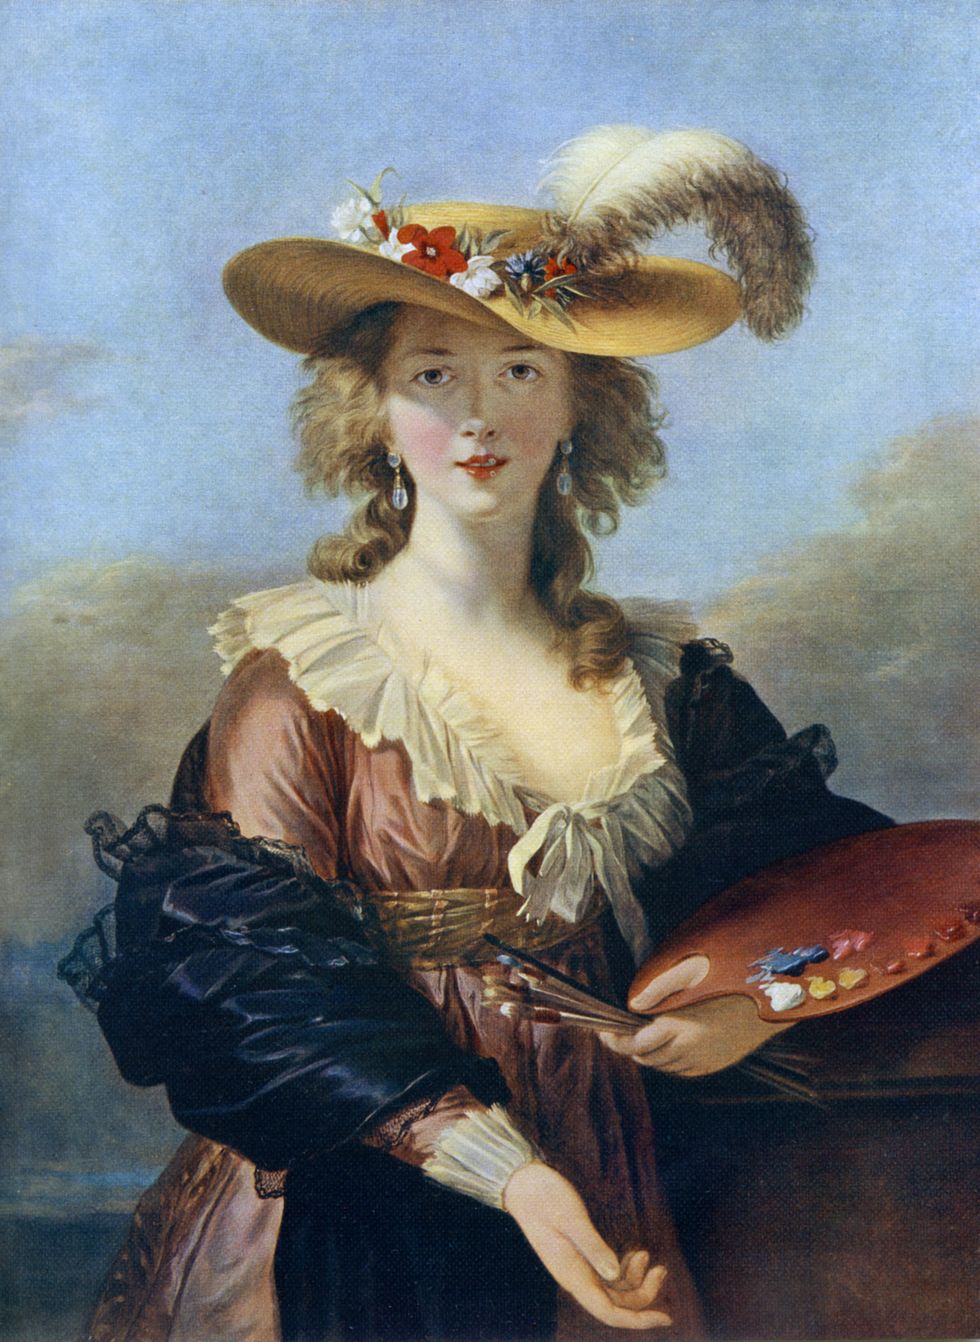 autorretrato con sombrero de paja louise Élisabeth vigée le brun en la national gallery de londres